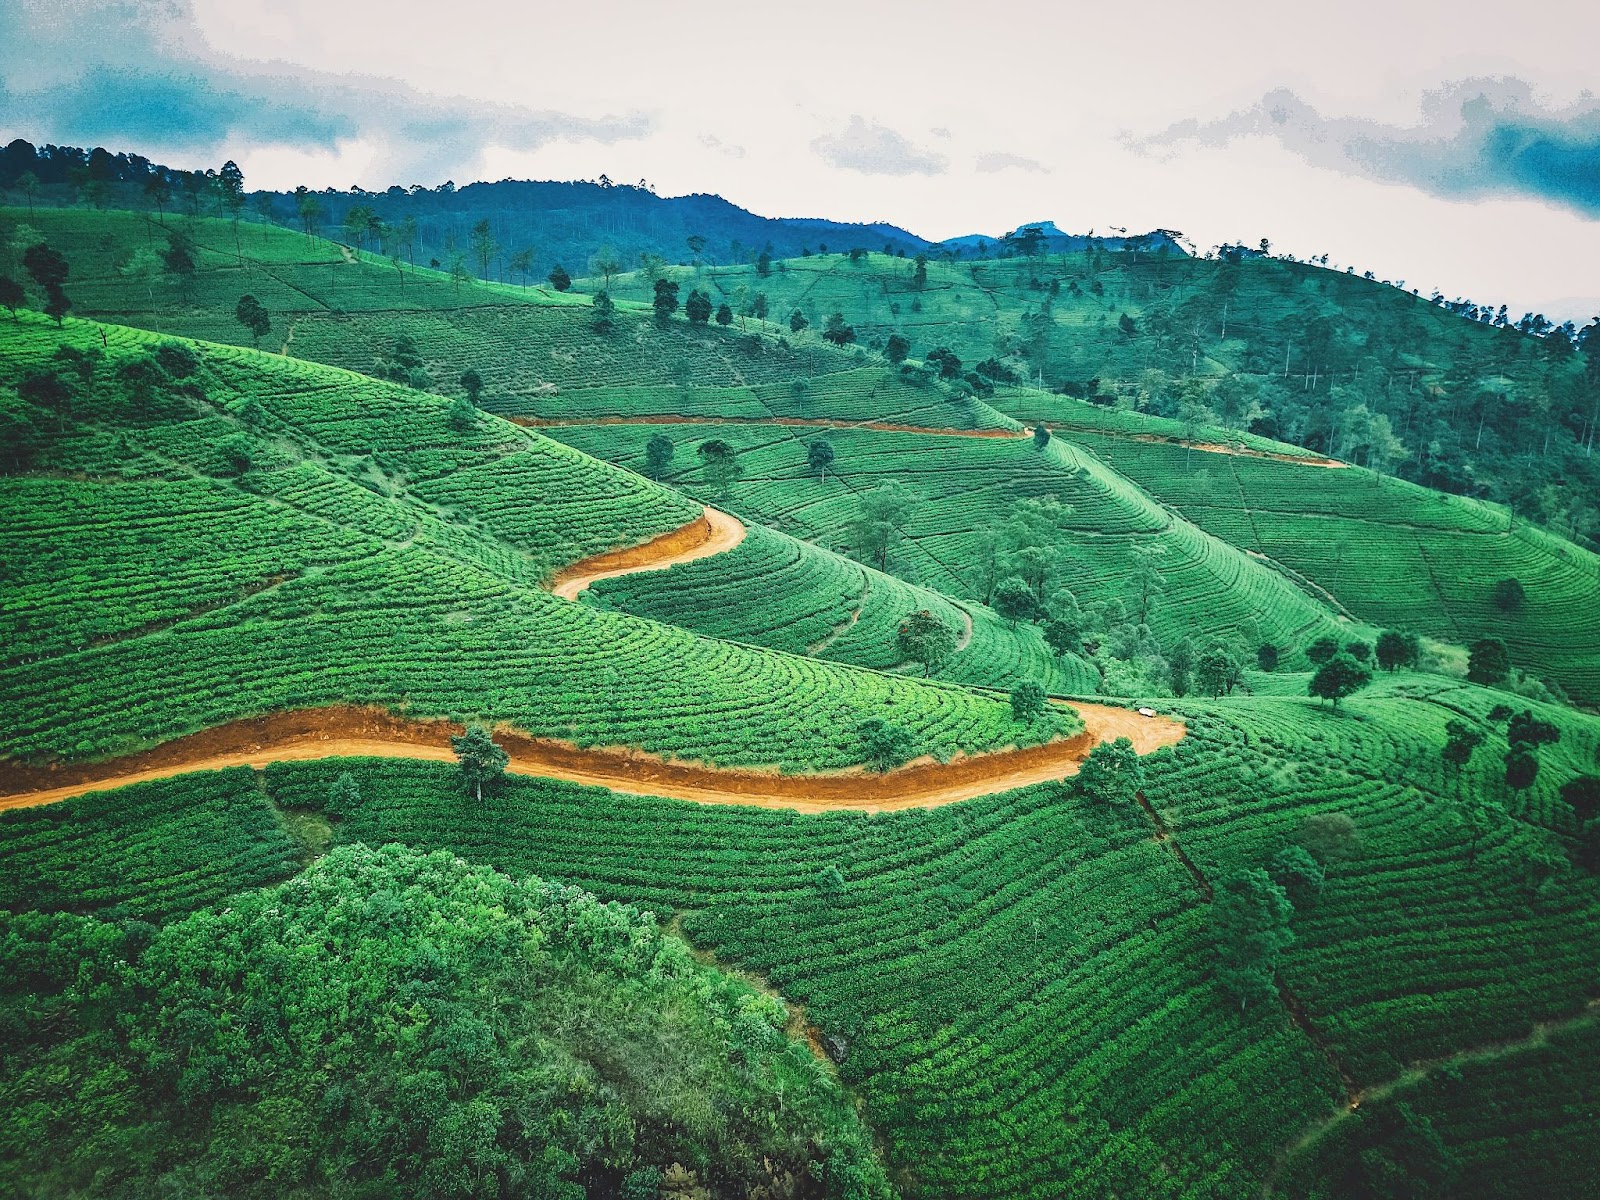 Plantação de chá no Sri Lanka